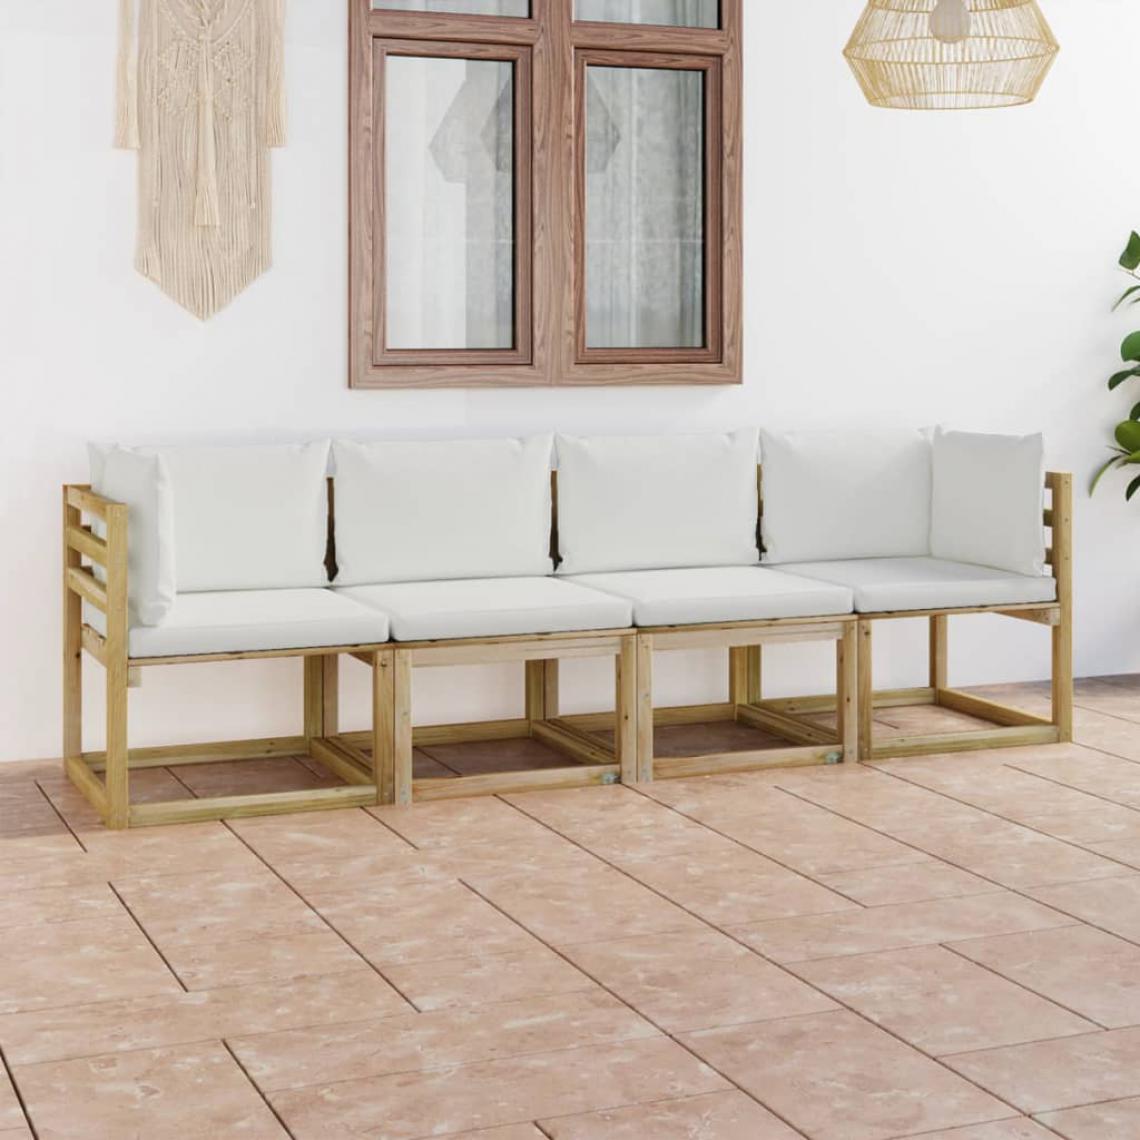 Chunhelife - Canapé de jardin 4 places avec coussins crème - Ensembles canapés et fauteuils